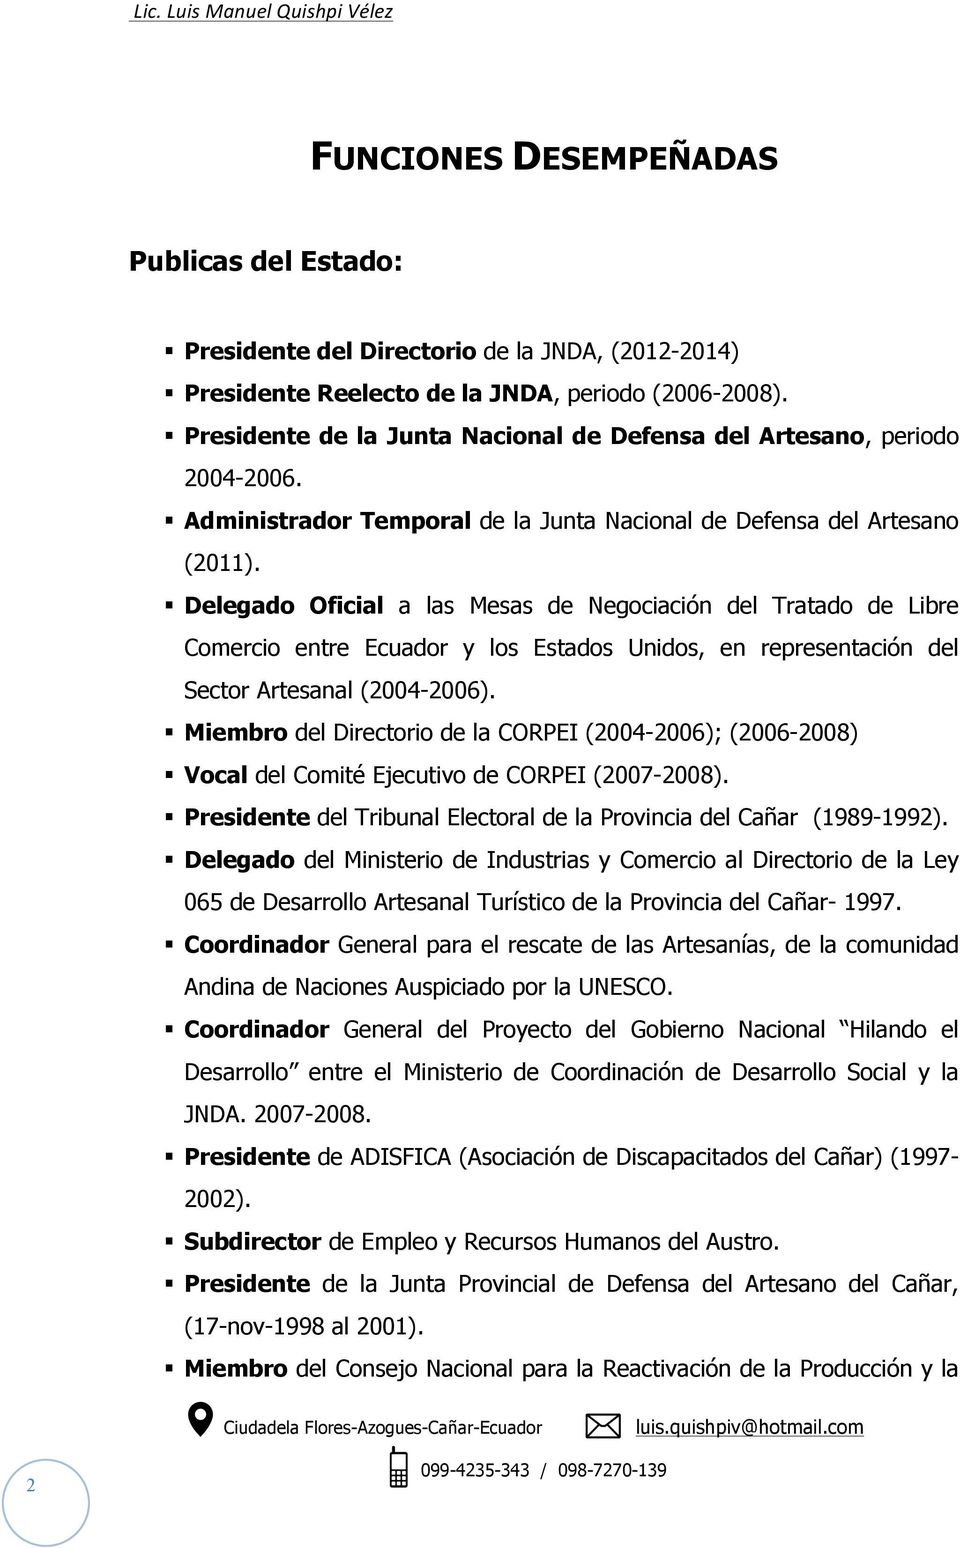 Delegado Oficial a las Mesas de Negociación del Tratado de Libre Comercio entre Ecuador y los Estados Unidos, en representación del Sector Artesanal (2004-2006).